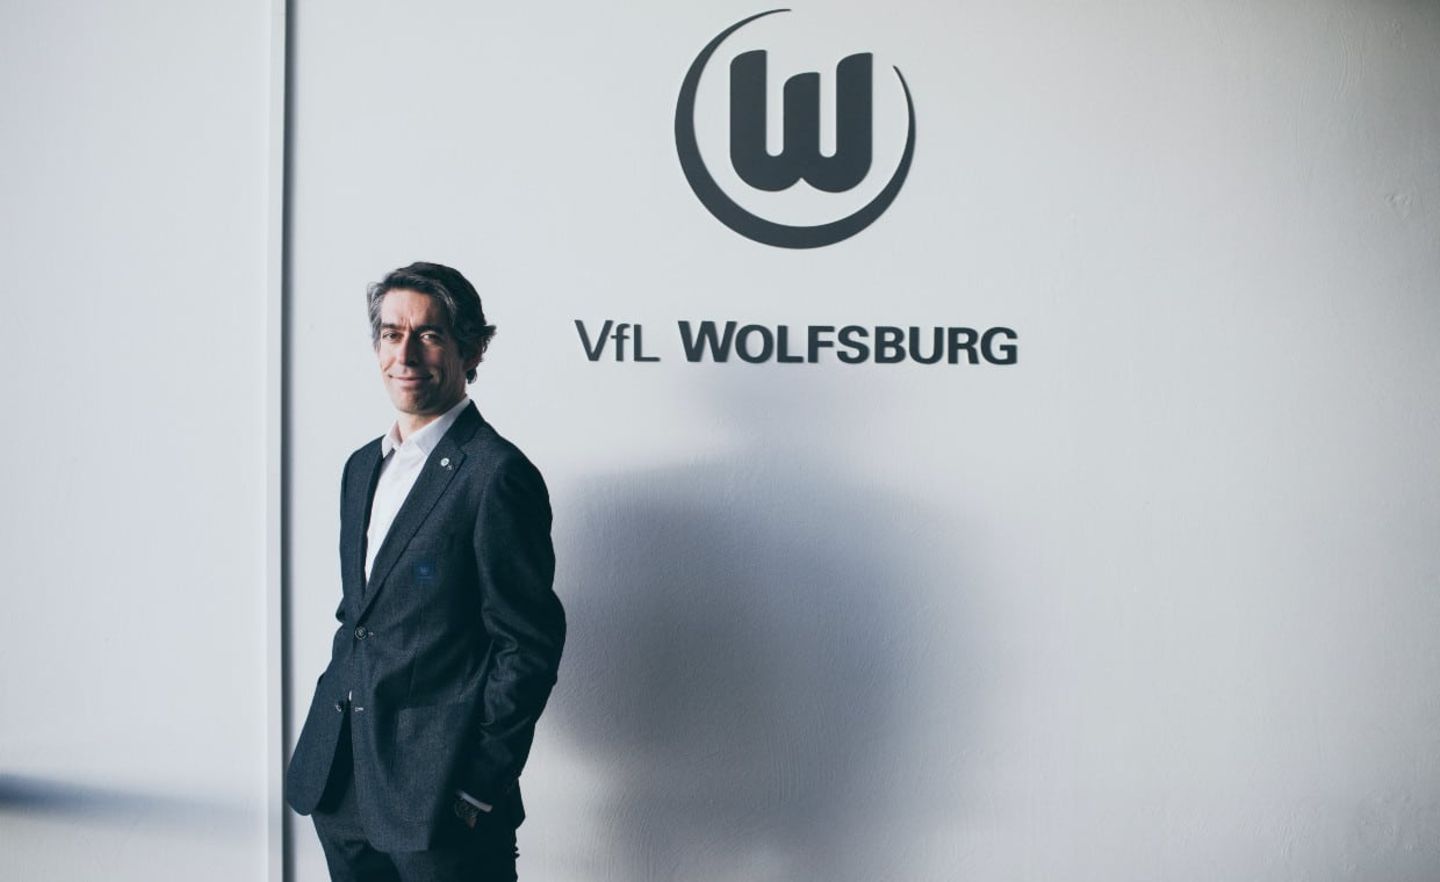 Michael Meeske ist Geschäftsführer der VW-Tochter VfL Wolfsburg